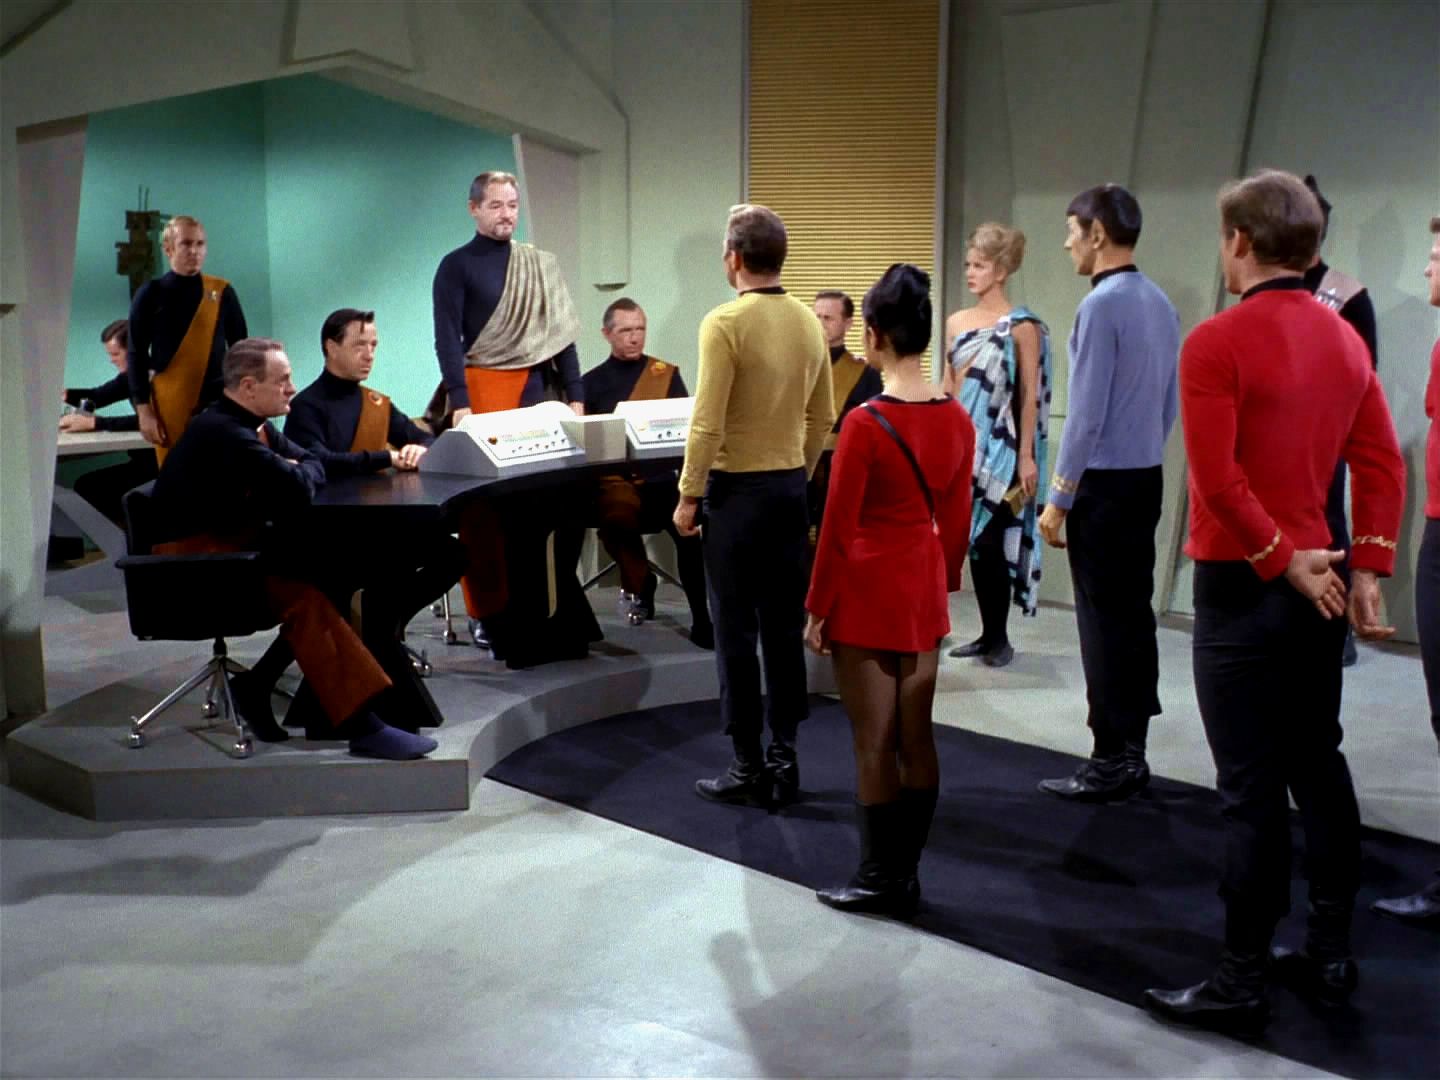 Výsadek je přijat velmi přátelsky. Anan 7 tvrdí, že jsou v hrozné staleté válce, přestože všude je mír, klid, kvetoucí civilizace. Kirk ani Spock nechápou.